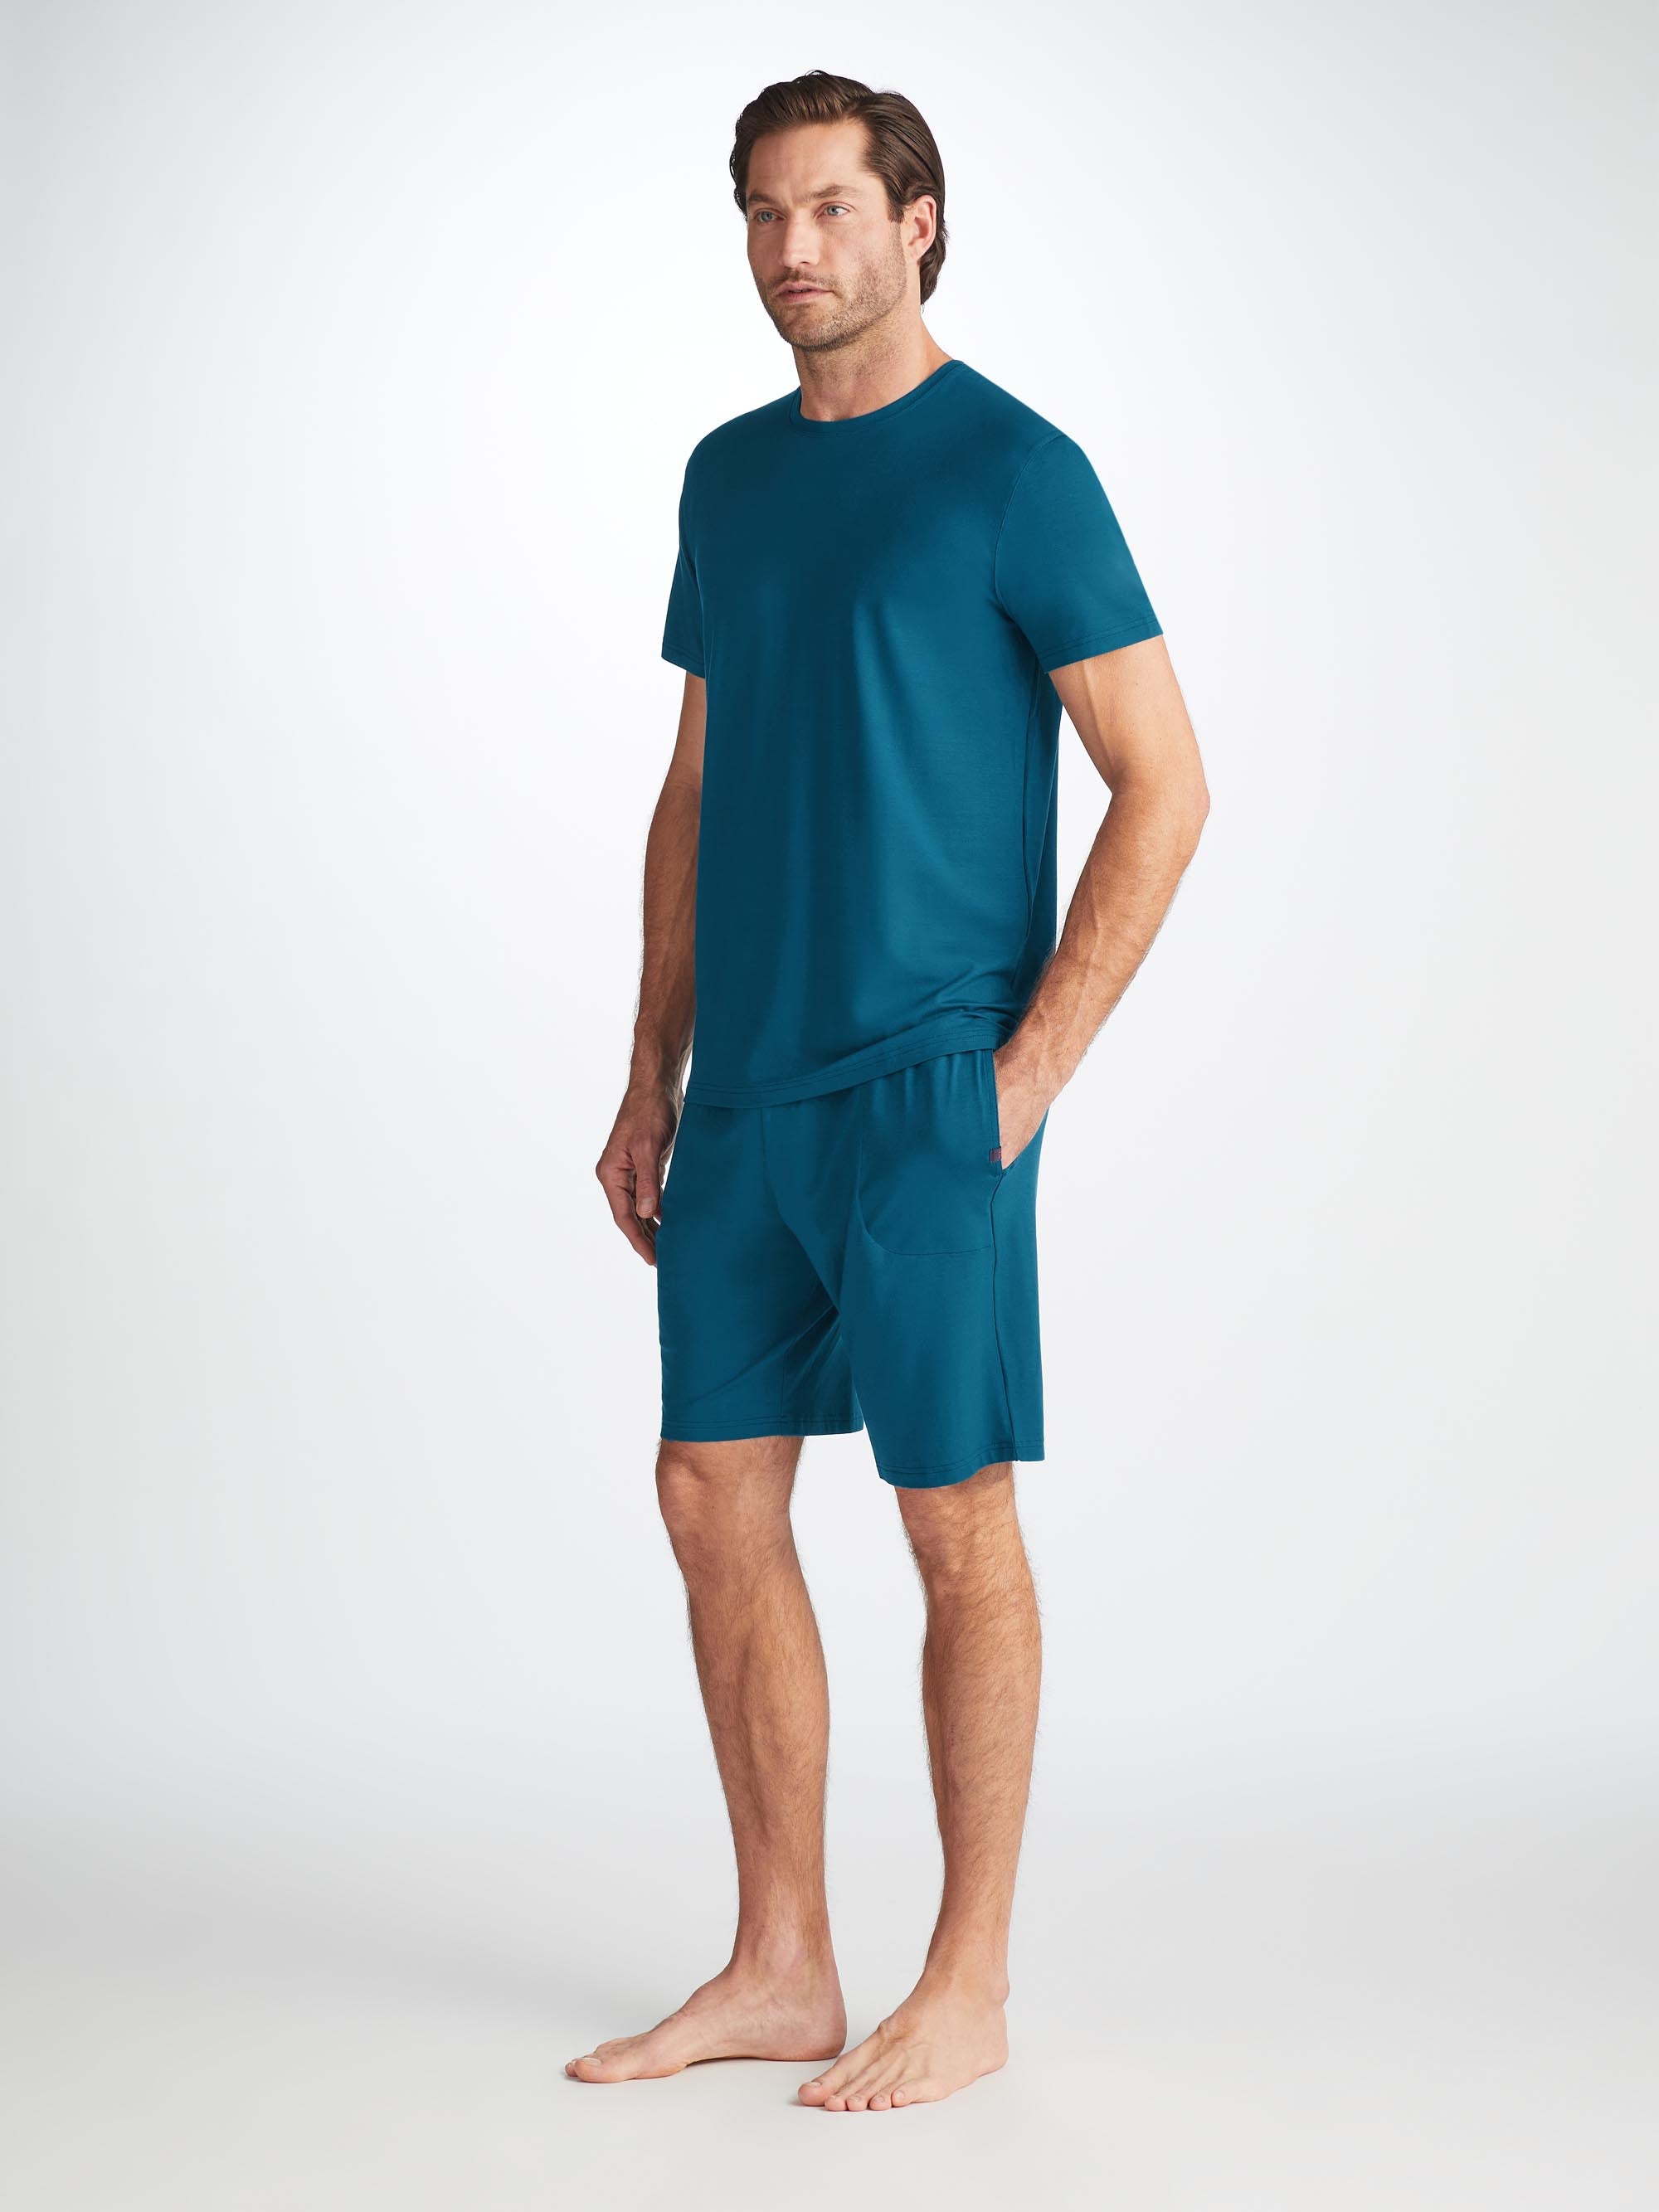 Men's Lounge Shorts Basel Micro Modal Stretch Poseidon Blue